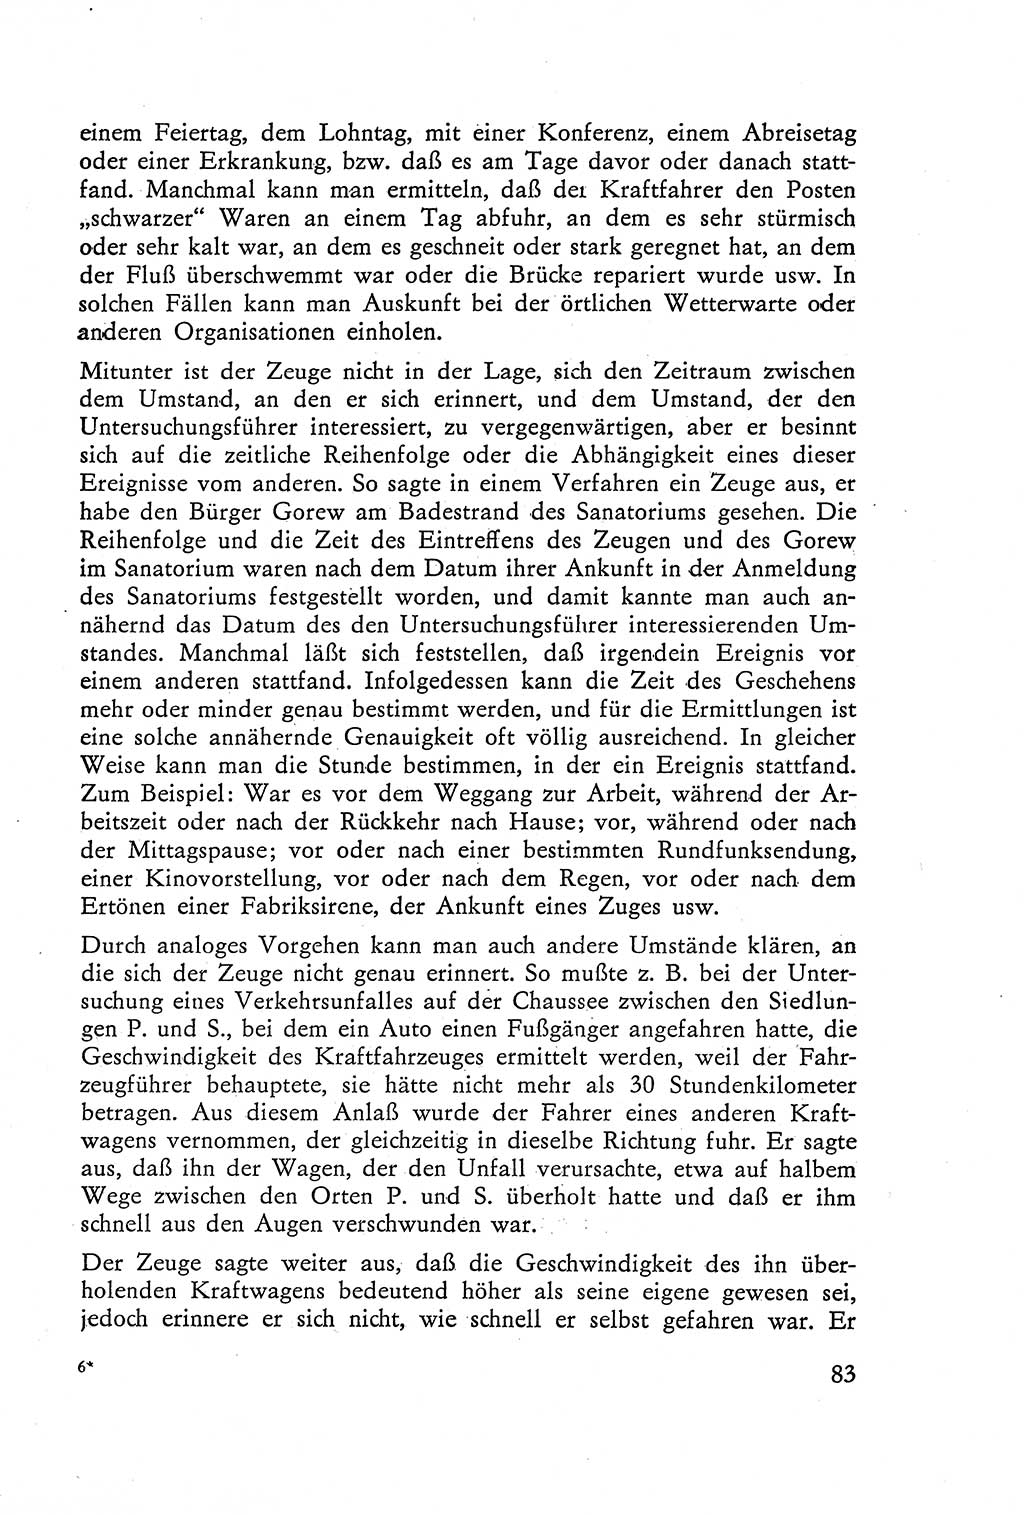 Die Vernehmung [Deutsche Demokratische Republik (DDR)] 1960, Seite 83 (Vern. DDR 1960, S. 83)